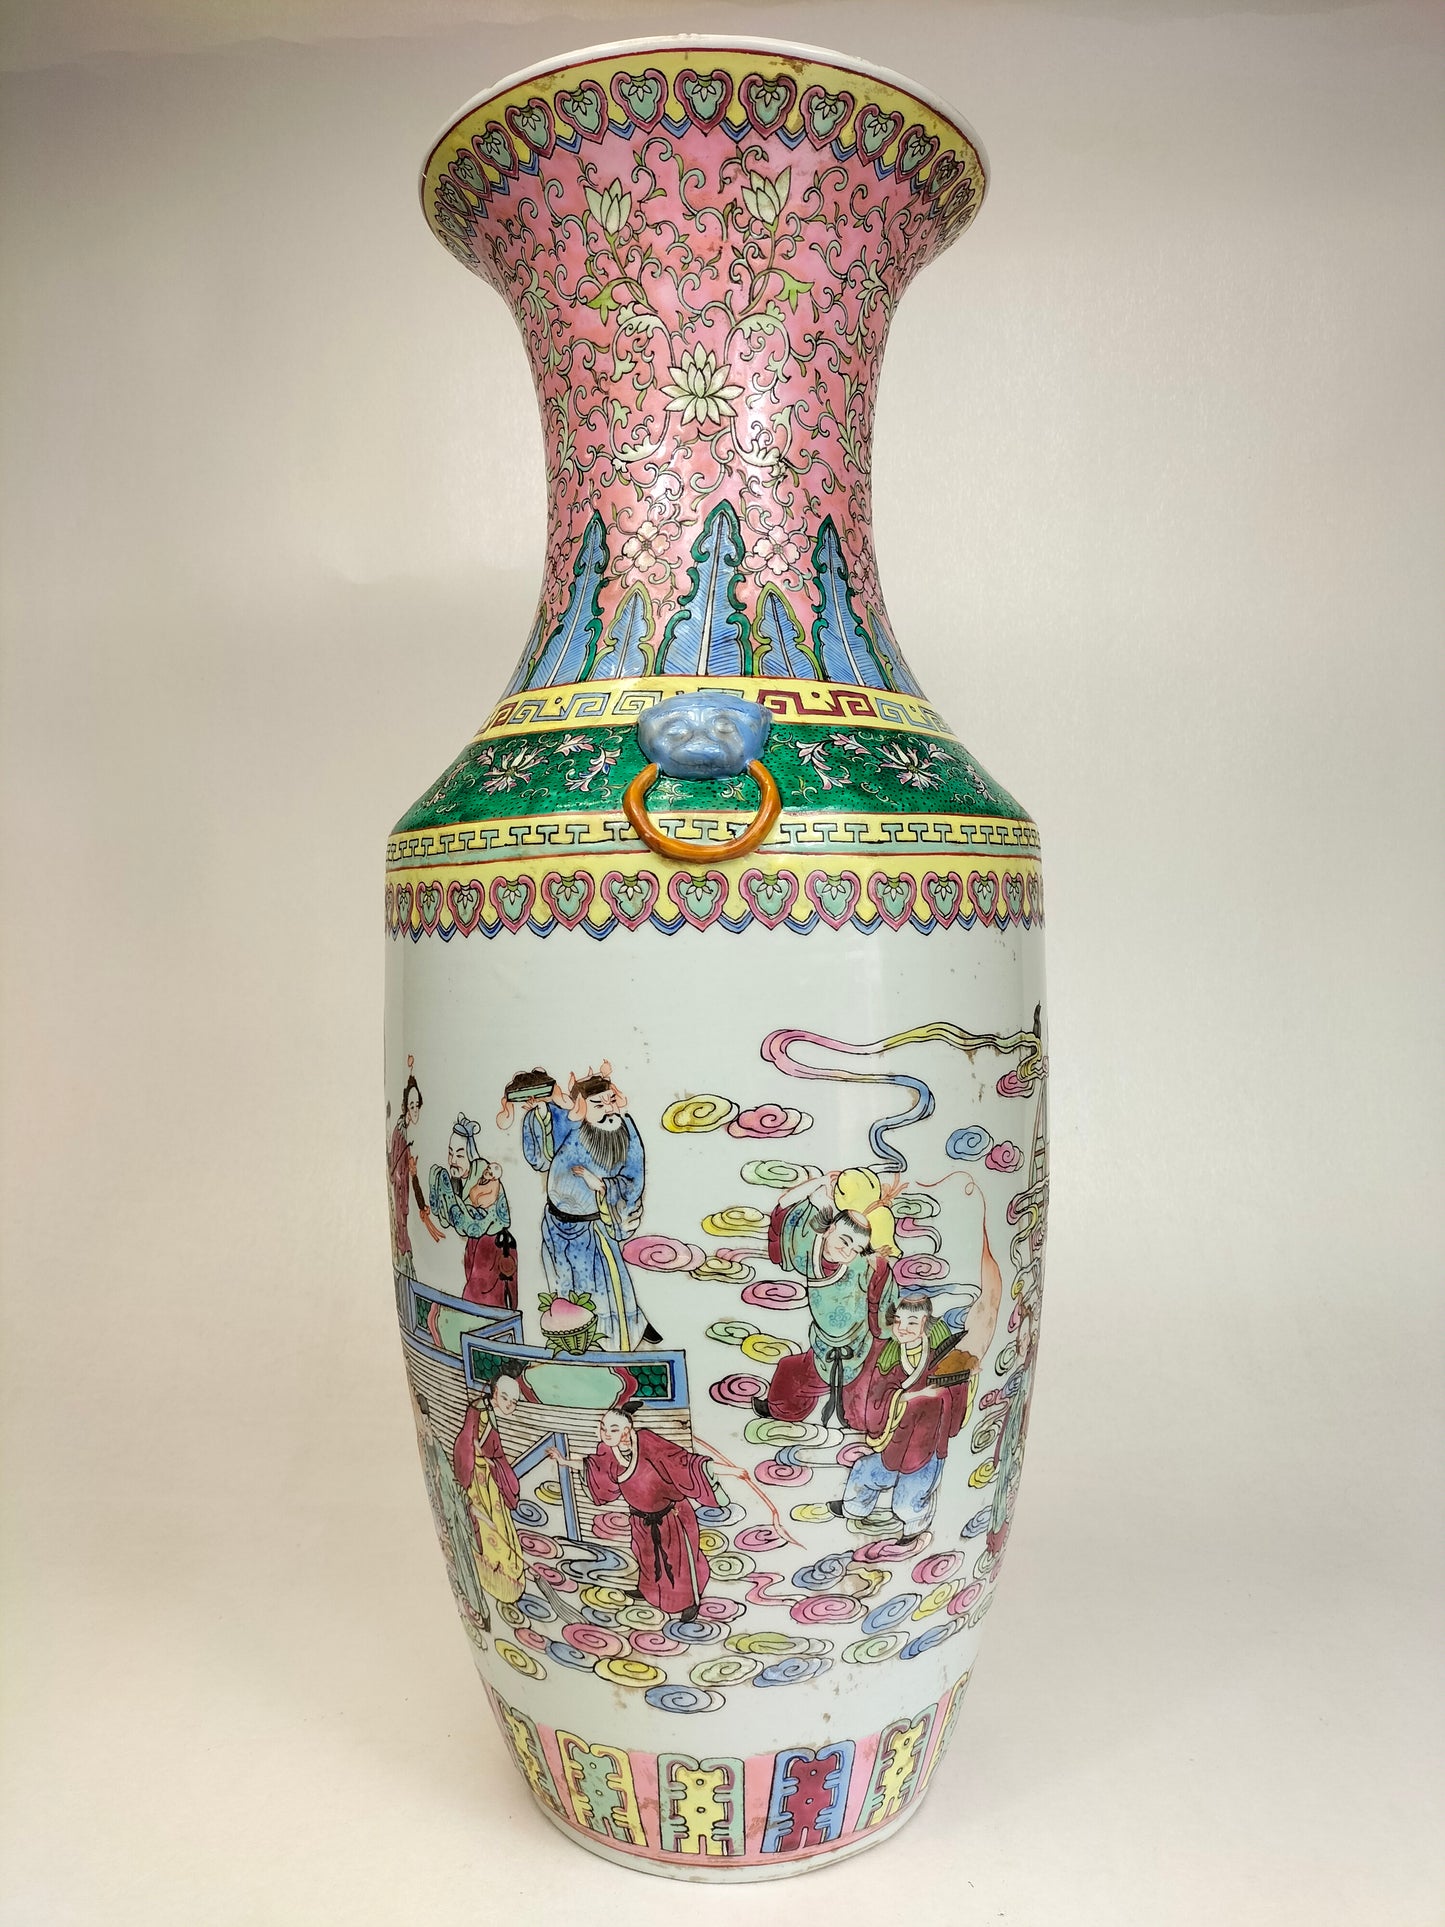 Grande vaso chinês XL da família XL decorado com cena imperial // Meados do século XX